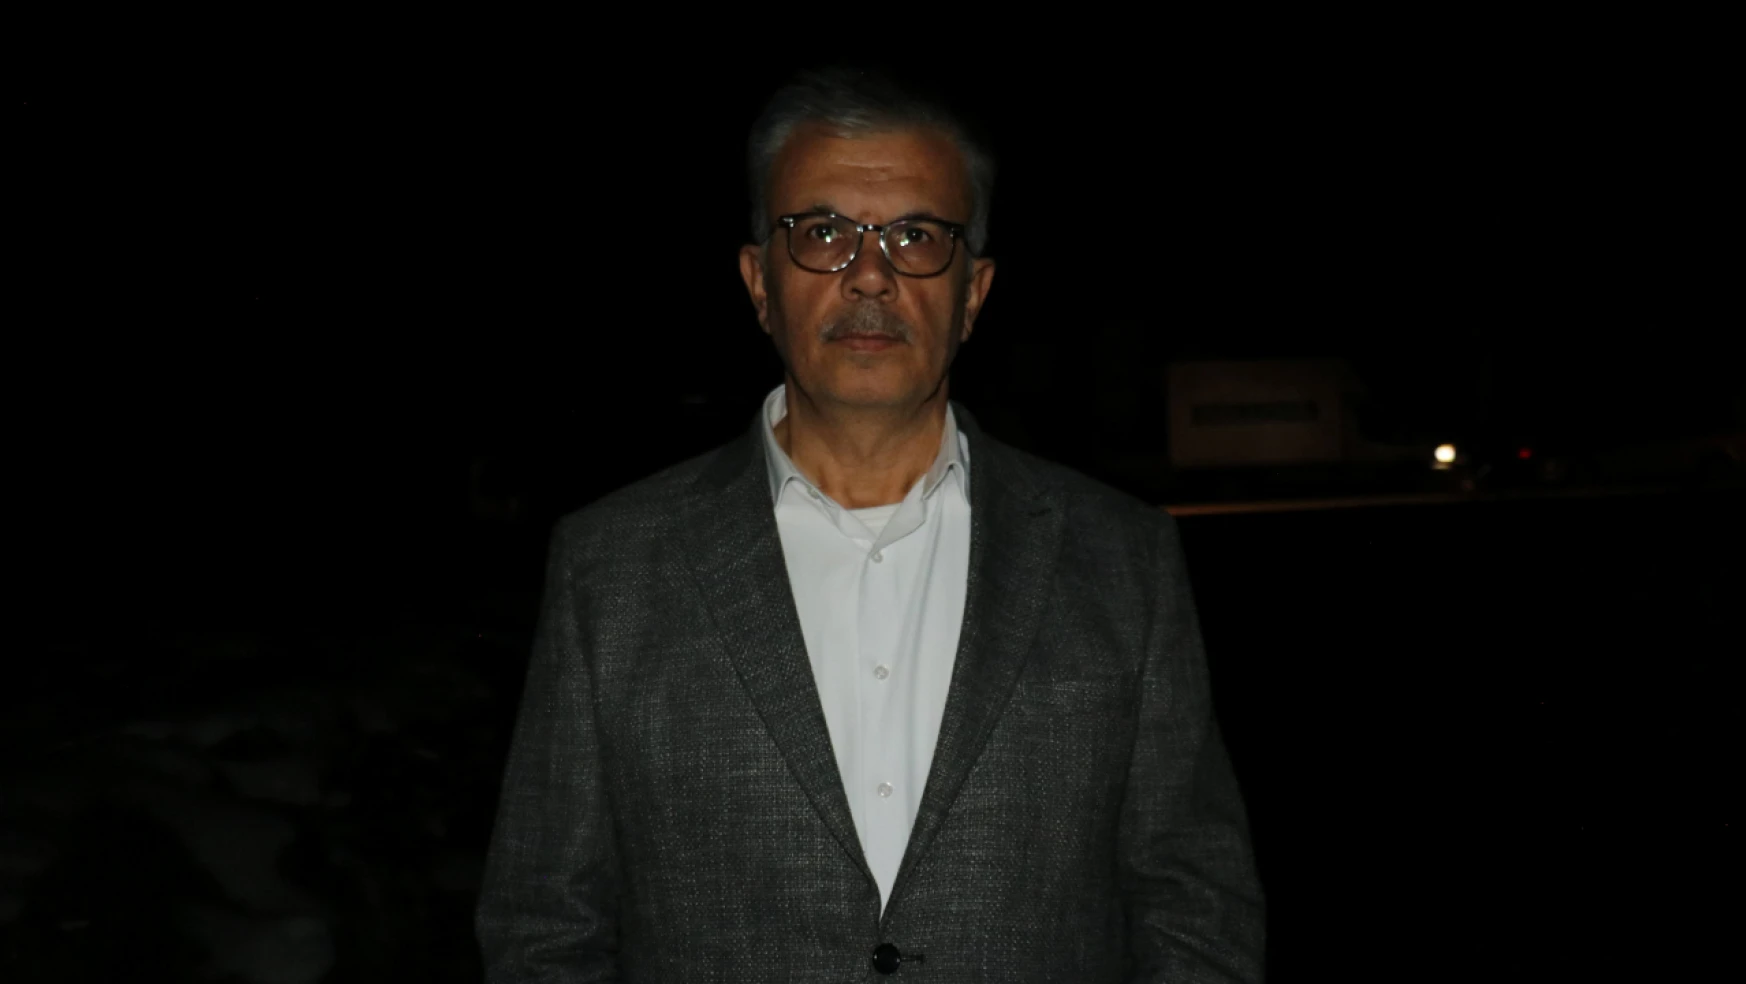 Büyükşehir Belediyesi Bağımsız Başkan Adayı Prof. Dr. Gezer, Aydınlatma Sorununa Dikkat Çekti